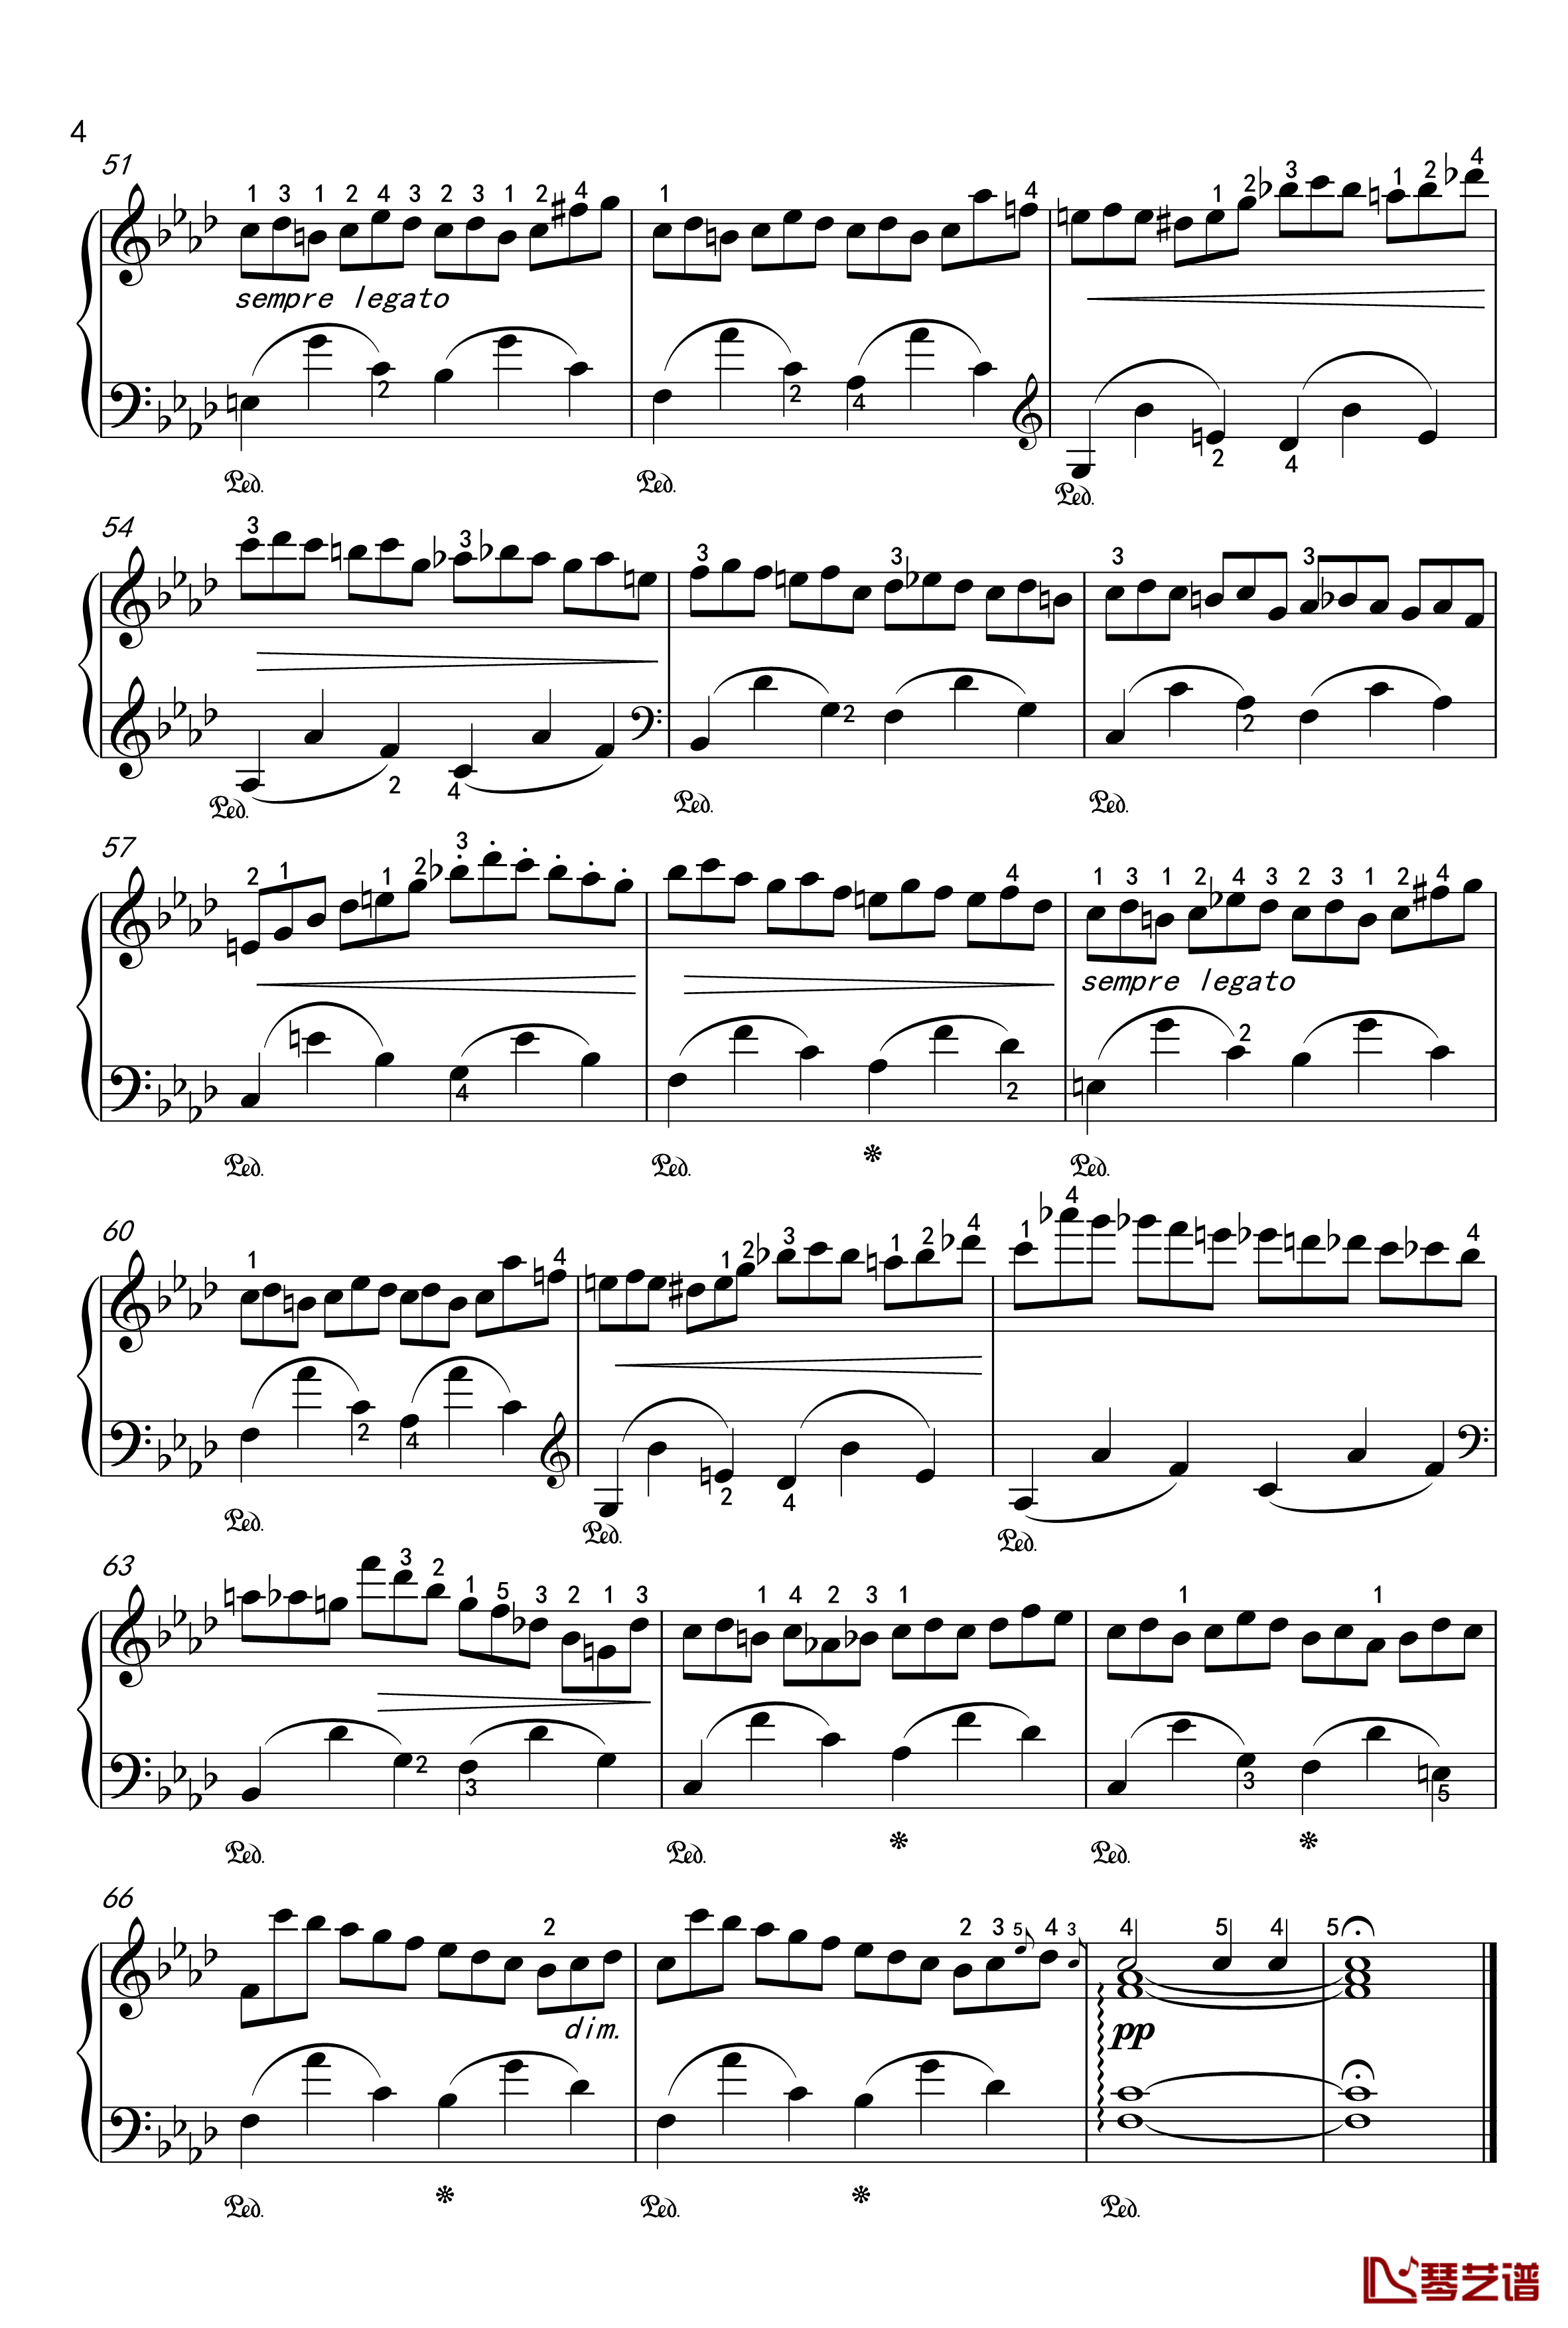 练习曲钢琴谱-OP-25-2-肖邦-chopin4